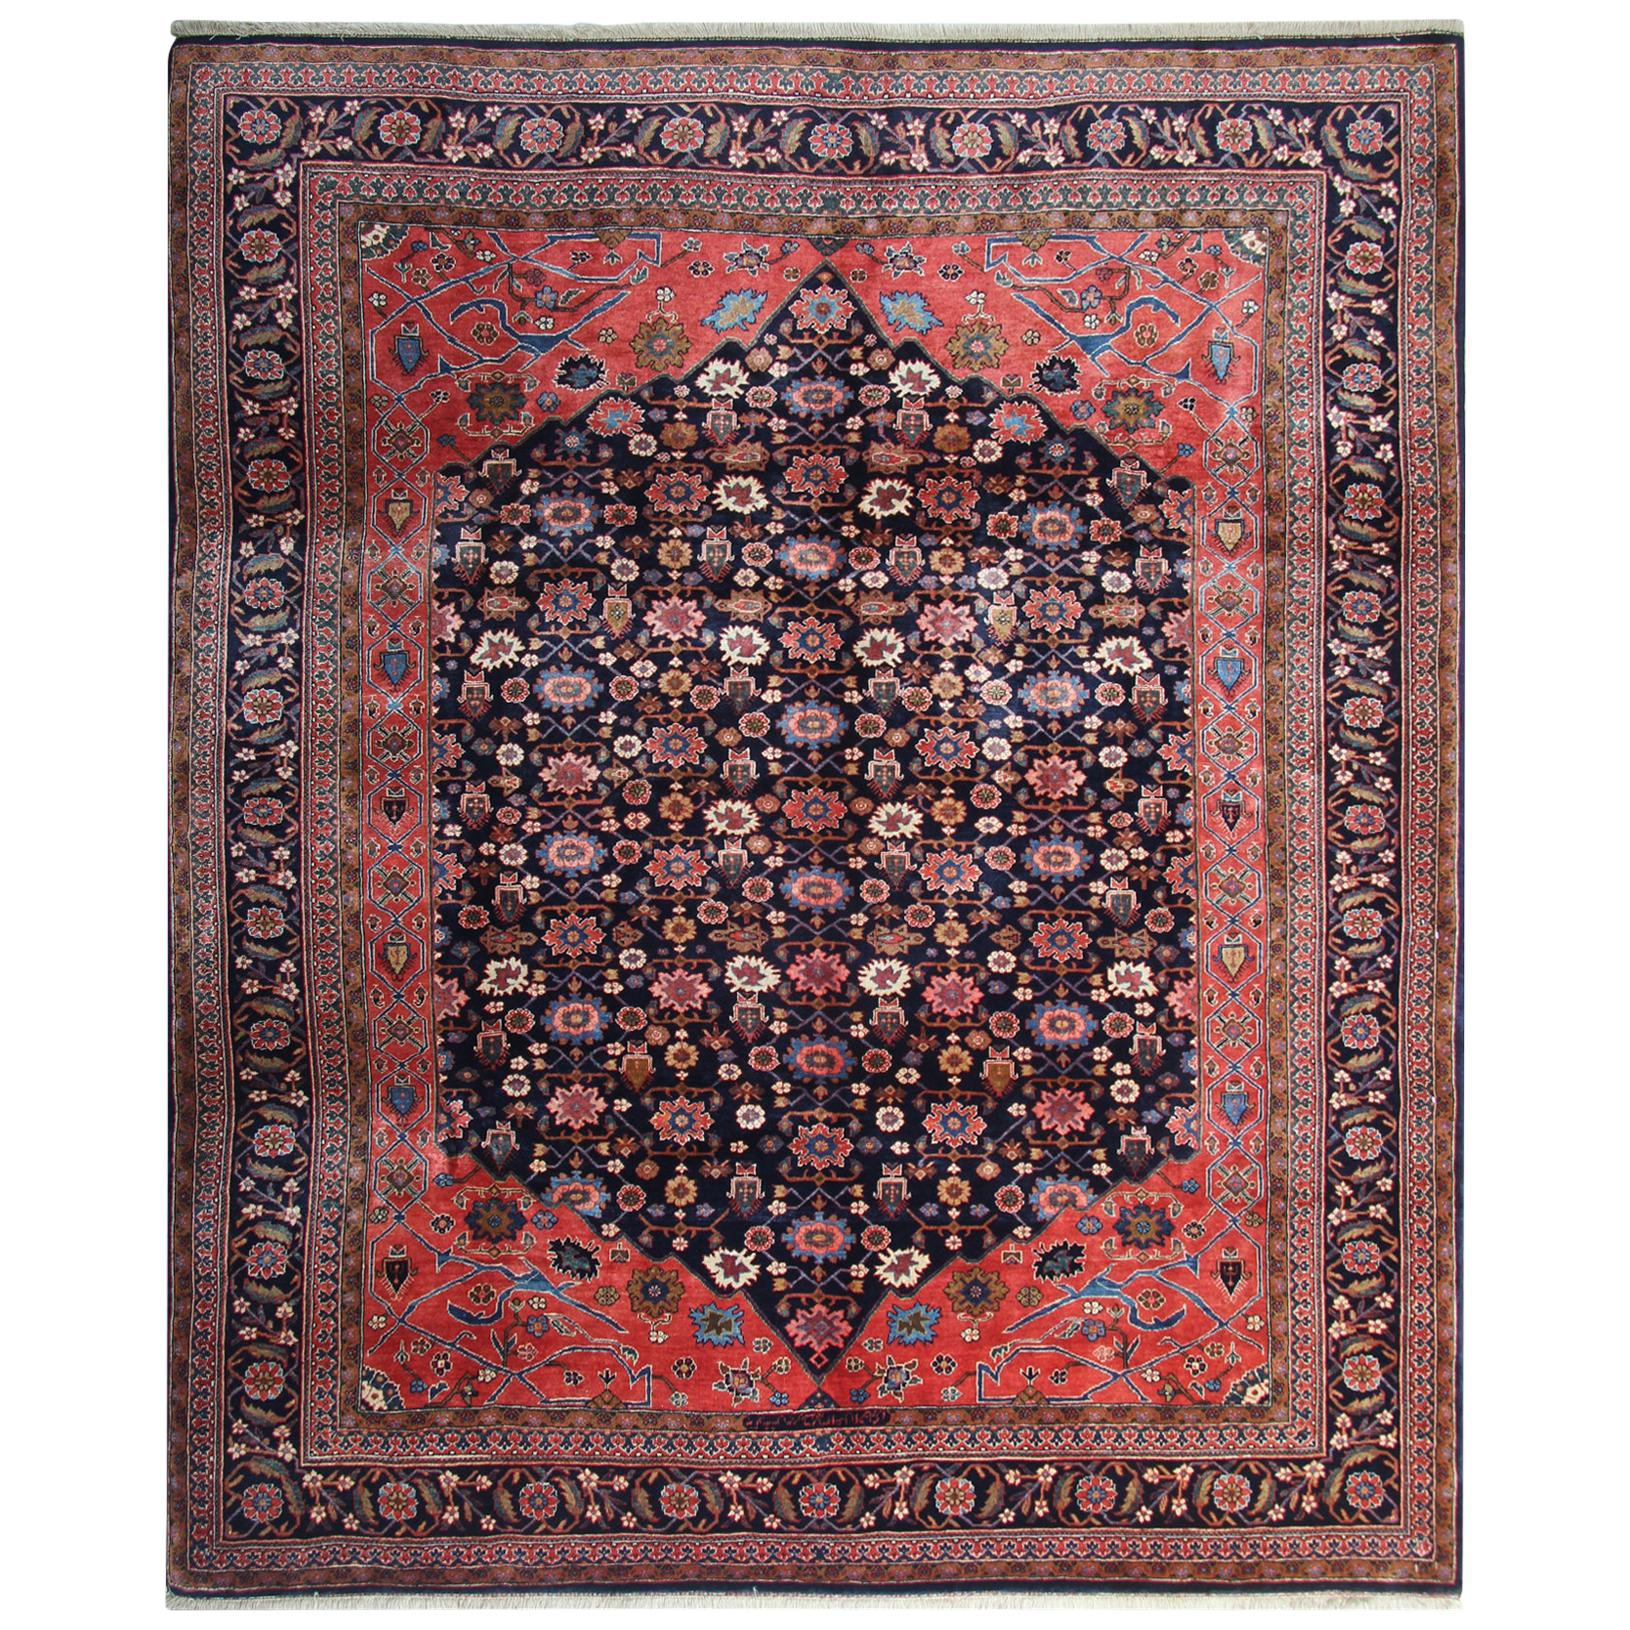 Handgefertigter orientalischer Teppich aus Wolle, roter geblümter traditioneller Wohnzimmerteppich